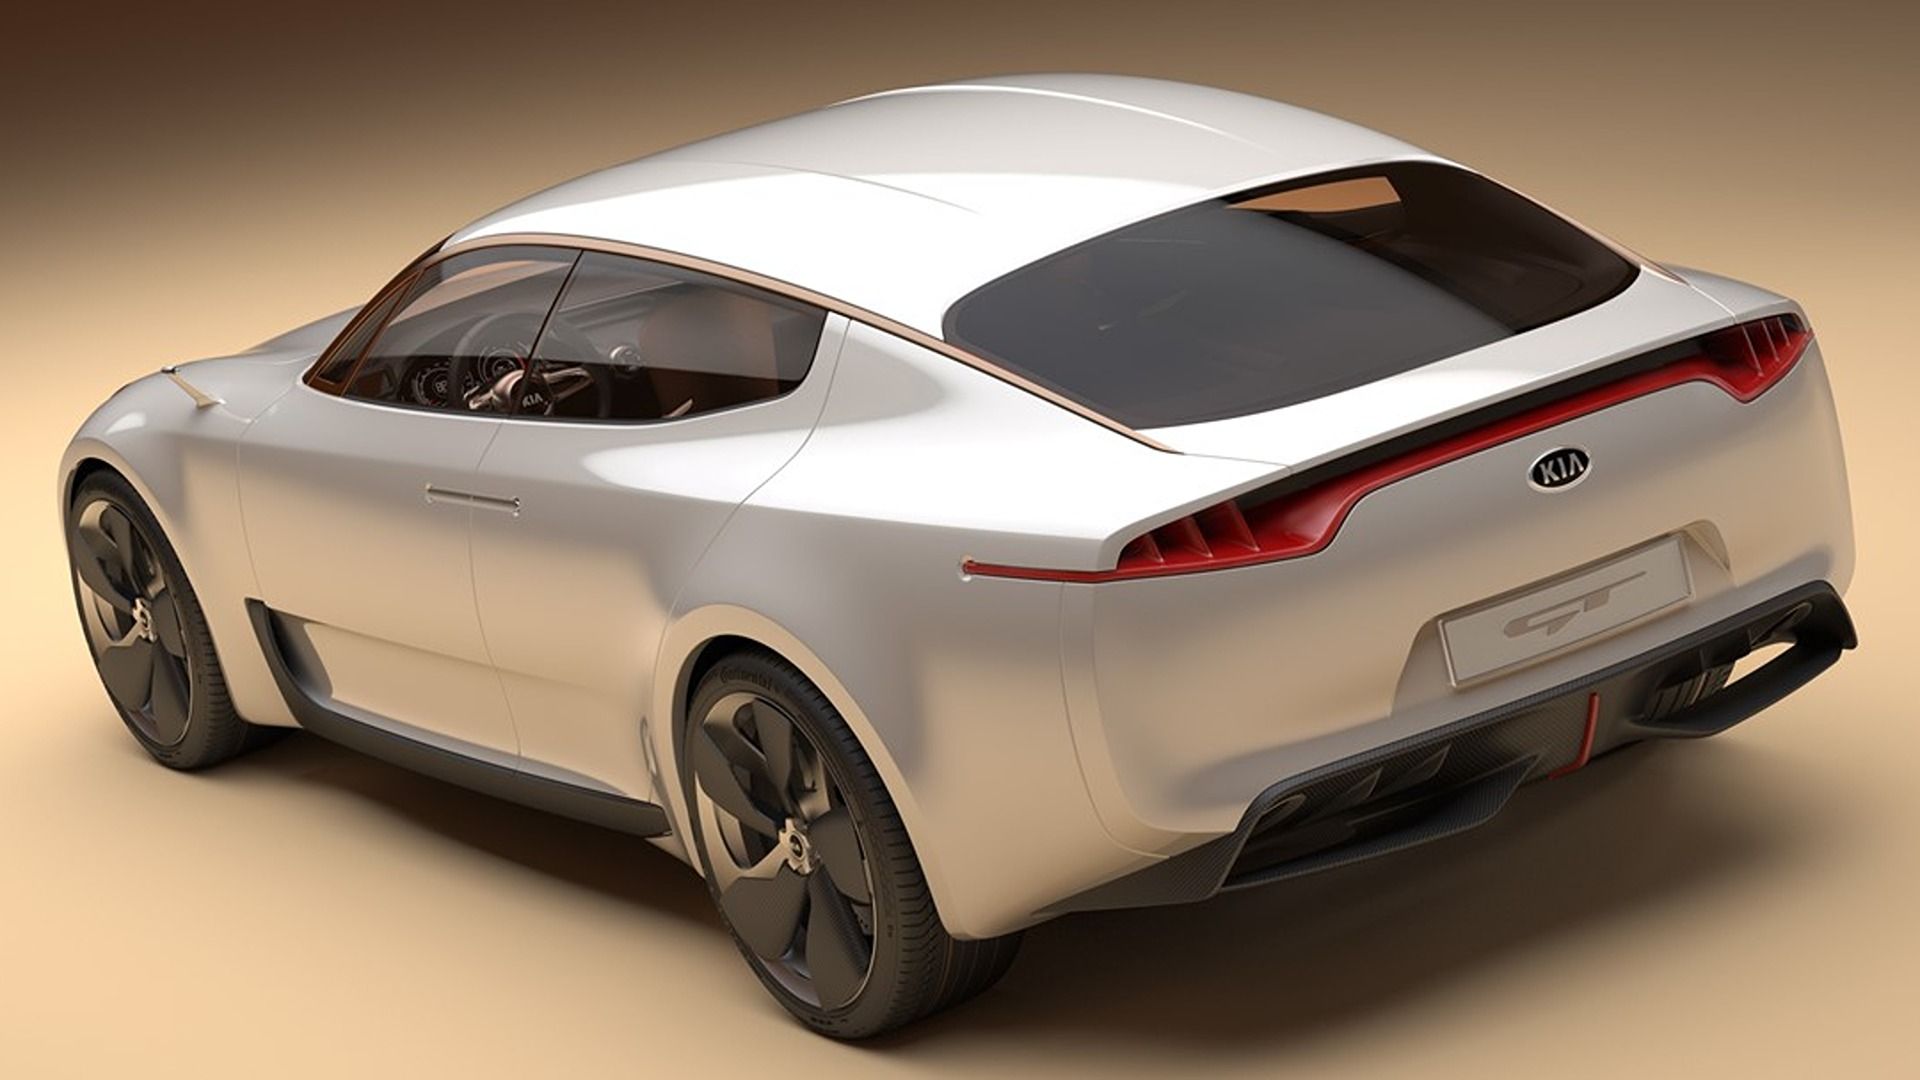 Kia GT Concept 3/4 rear view